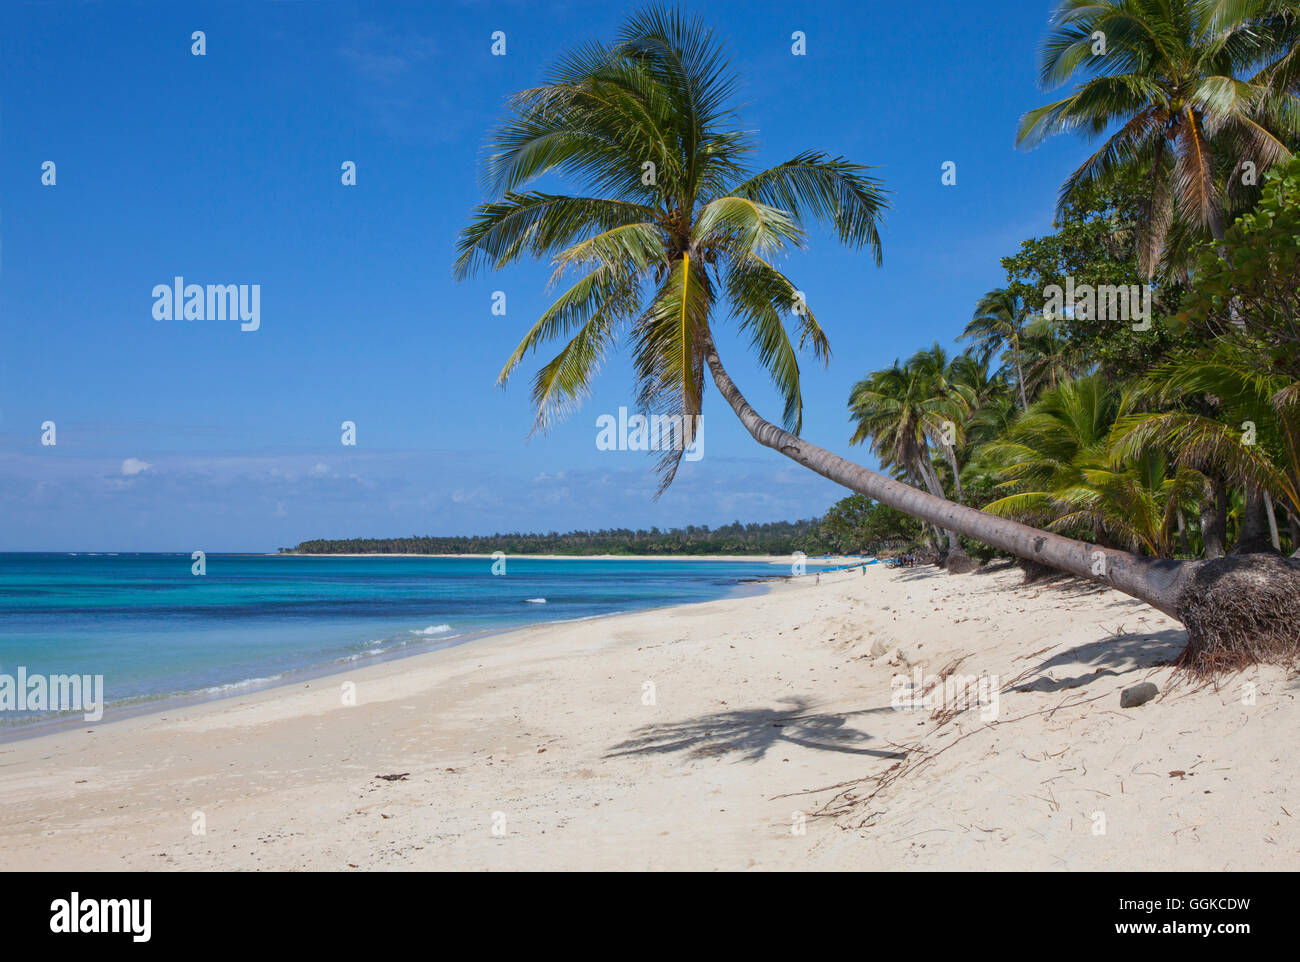 Saud playa tropical playa en Pagudpud, provincia de Ilocos Norte en la isla principal de Luzón, Filipinas, Asia Foto de stock